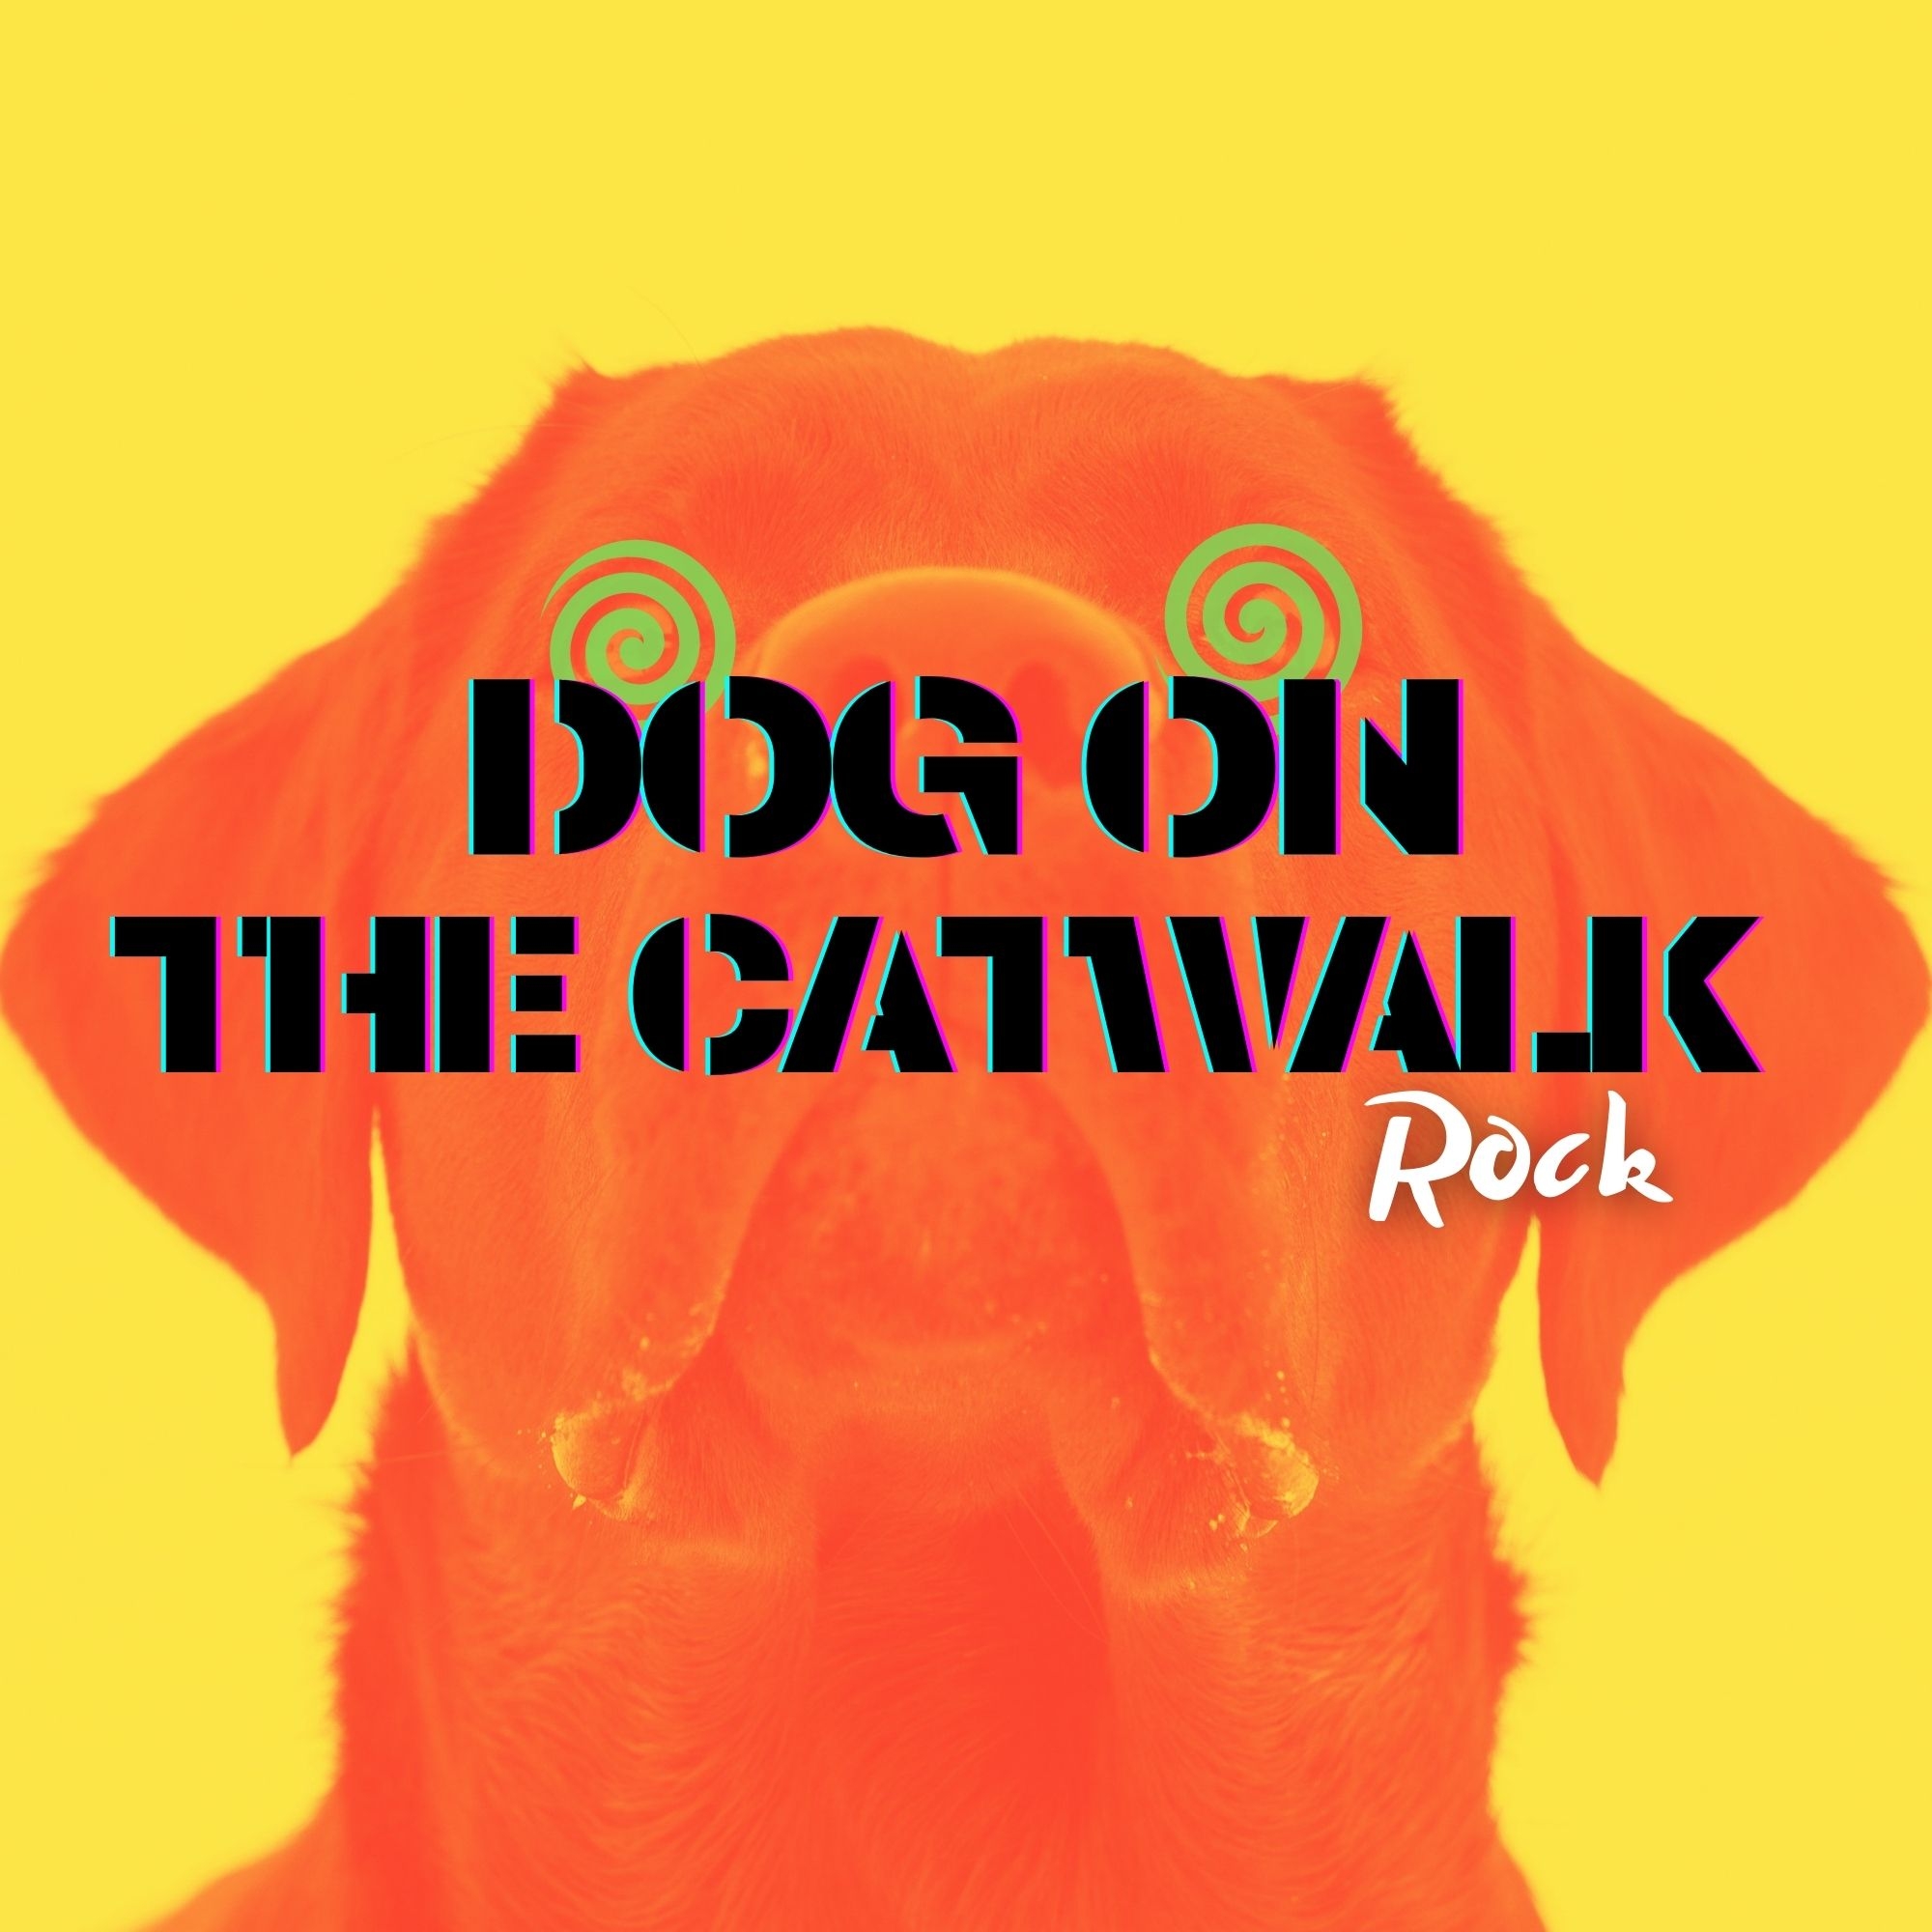 fotka Dog On The Catwalk číslo 1.jpg